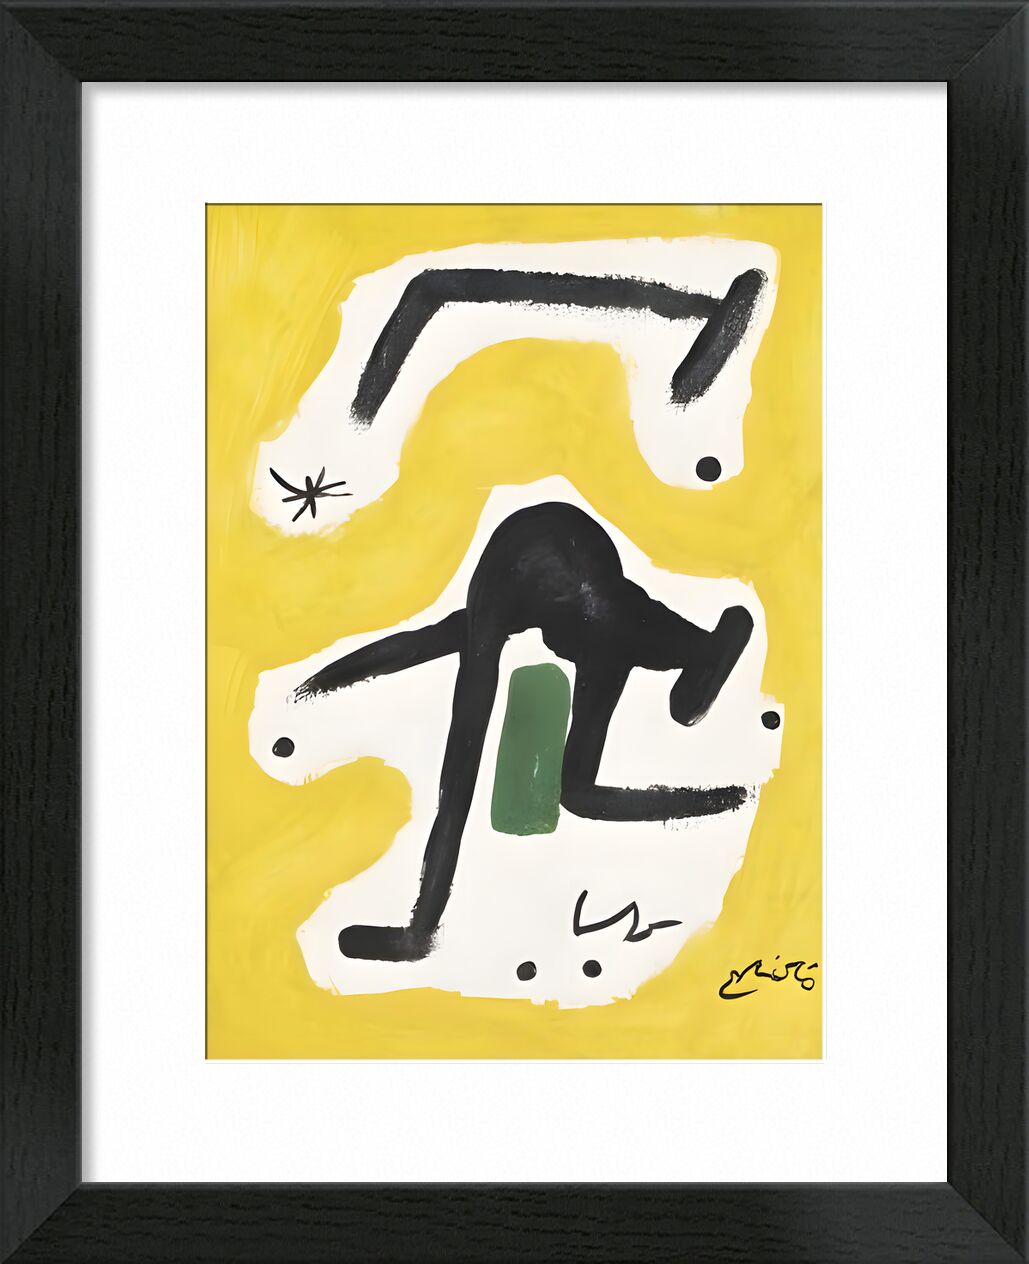 Woman, Birds, Star, 1978 von Bildende Kunst, Prodi Art, abstrakt, Malerei, Frau, Joan Miró